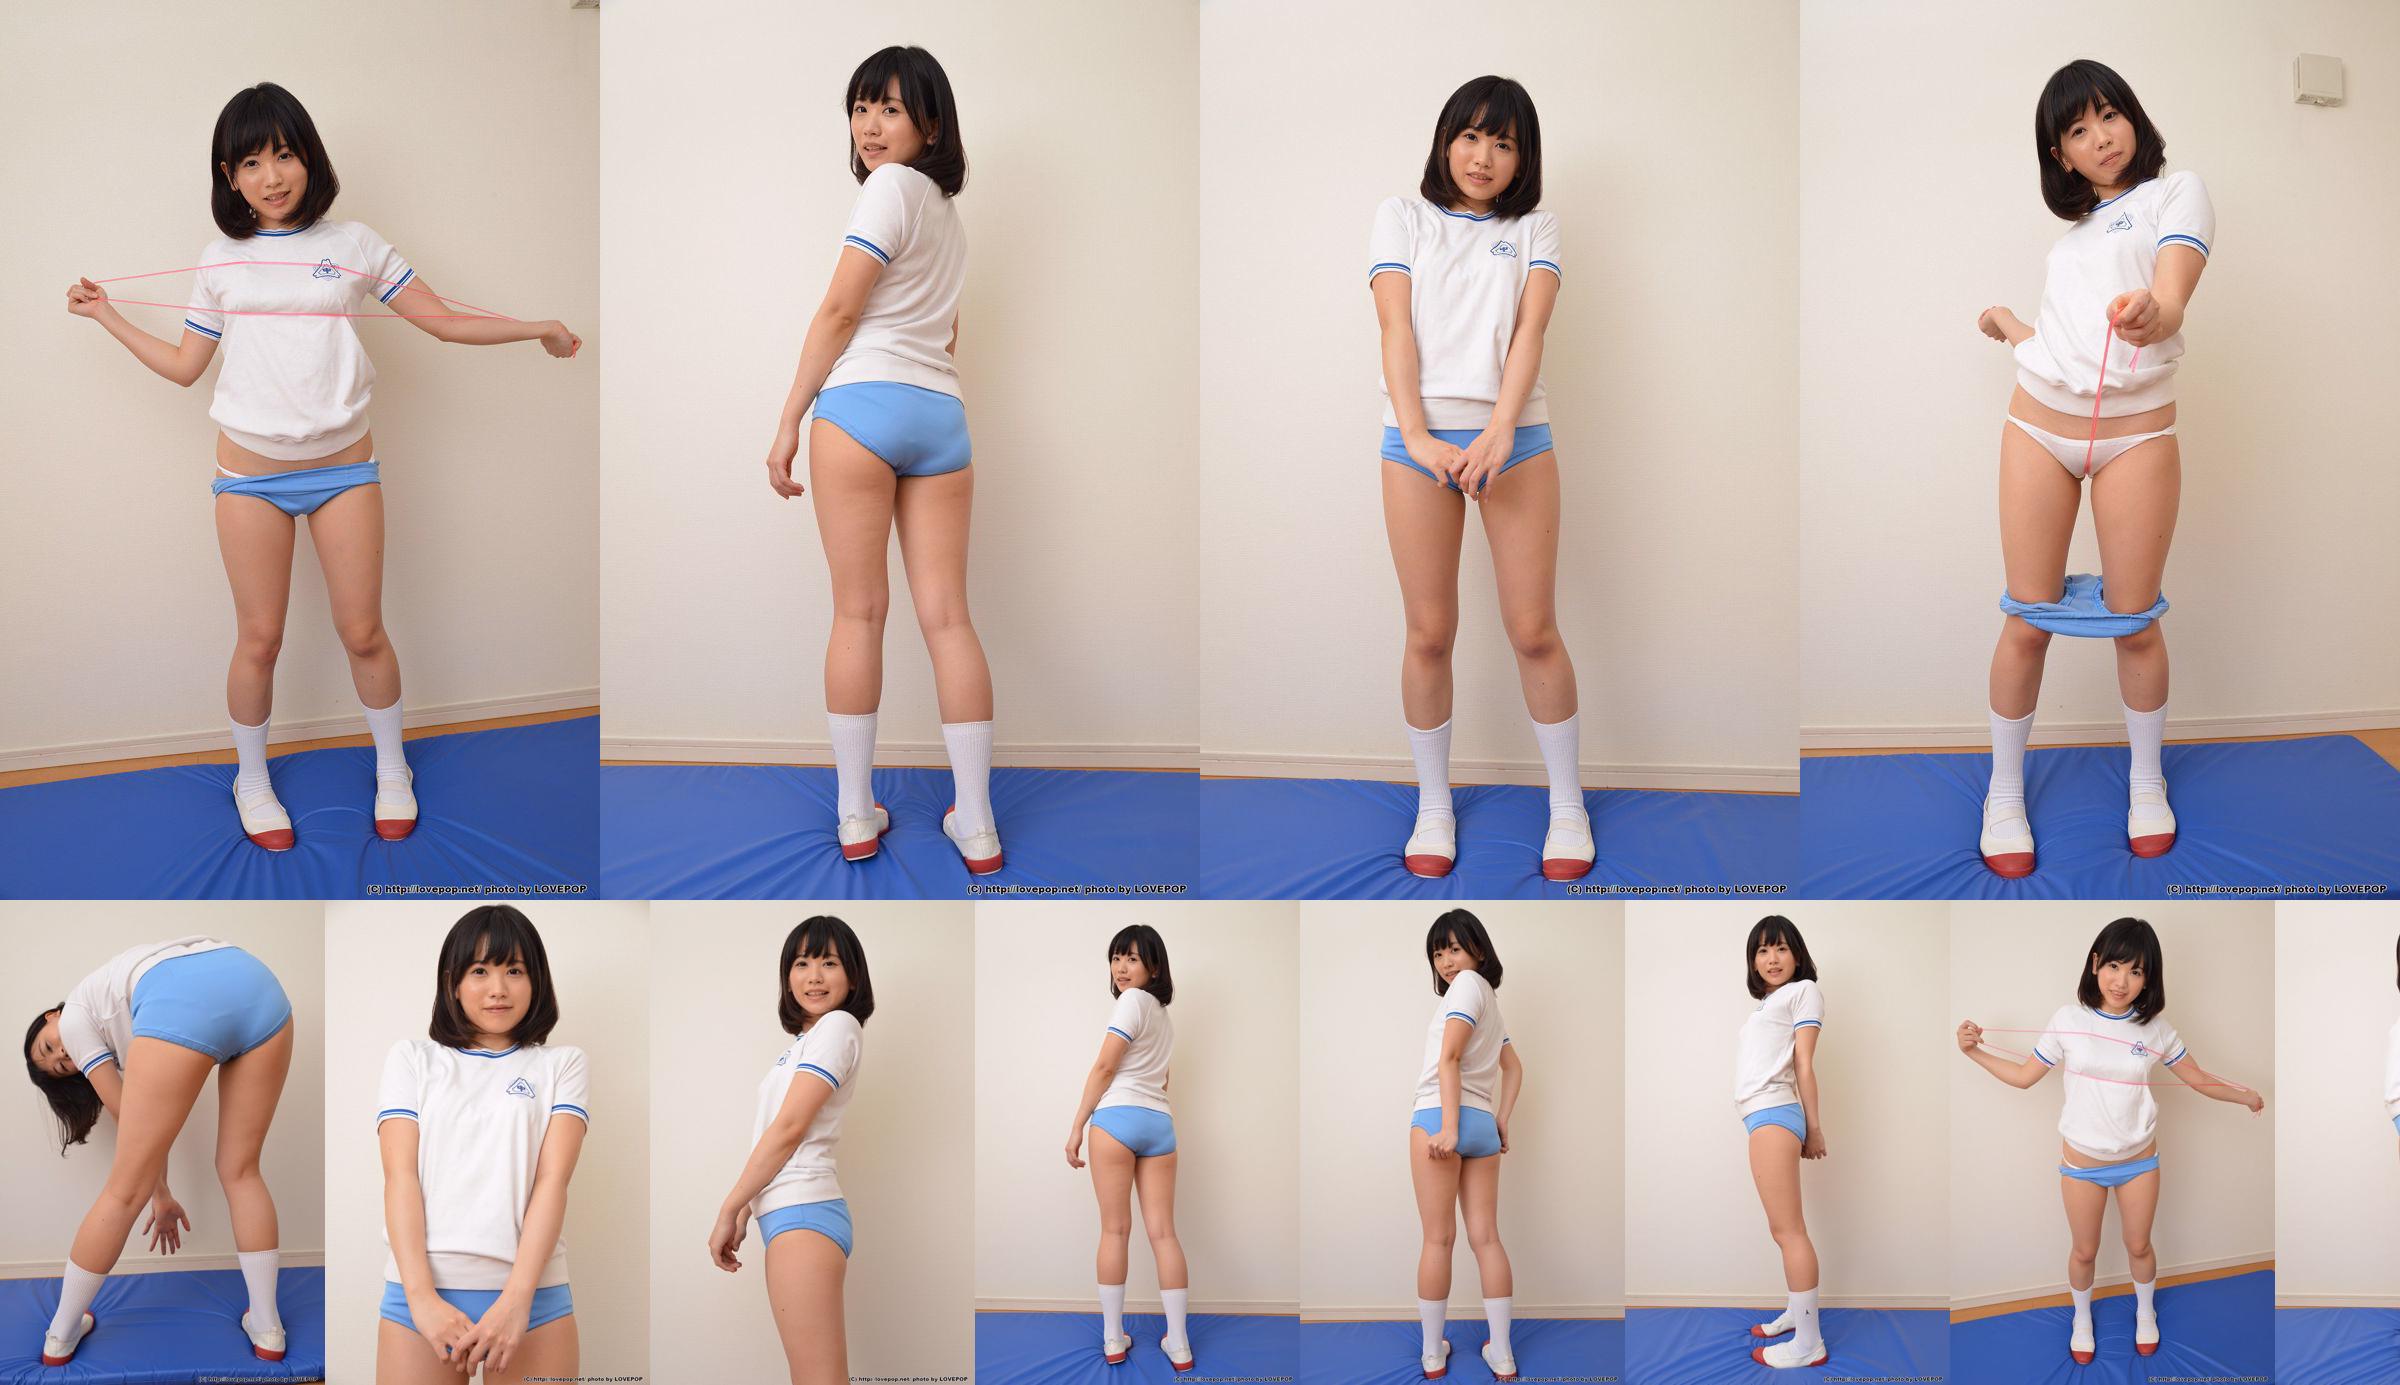 [LOVEPOP] Yuna Kimino Yuna Kimino Photoset 01 No.3f9542 Page 1